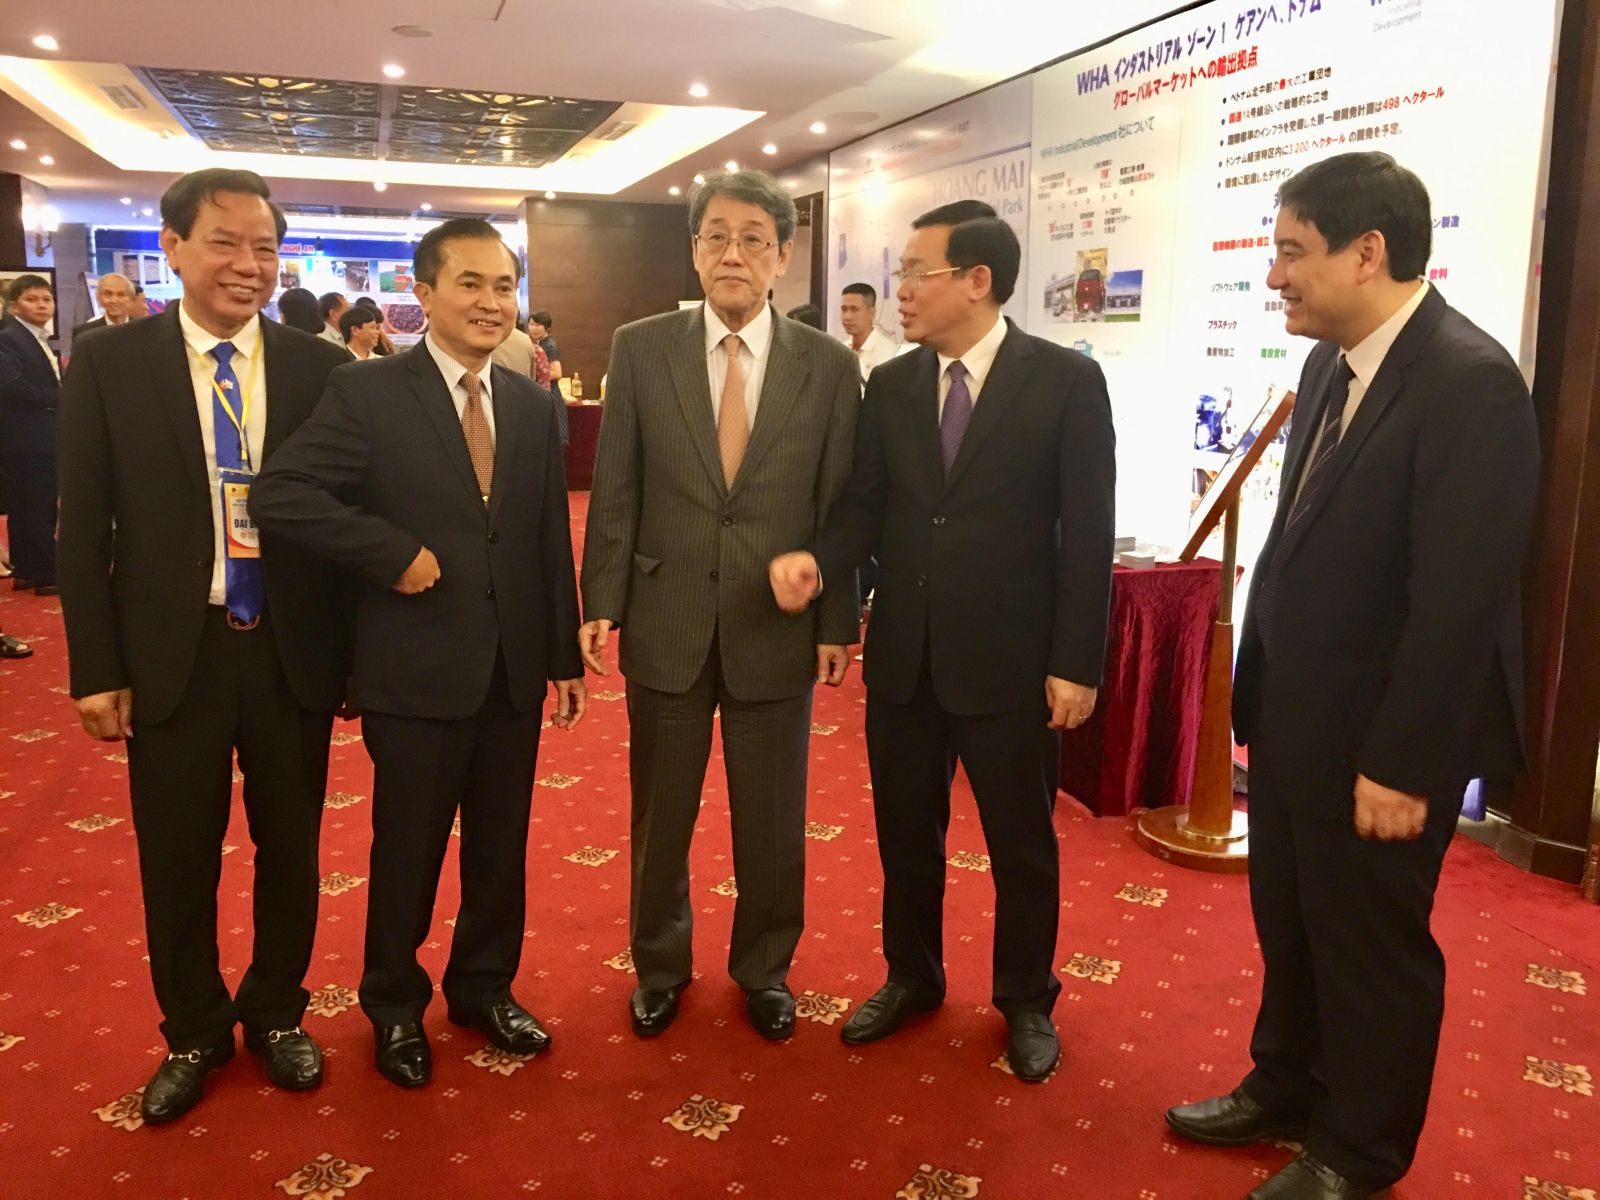 Phó Thủ tướng Vương Đình Huệ (ảnh thứ 4 từ trái sang phải) và ngài đại sứ đặc mệnh toàn quyền Nhật Bản tại Hà nội trao đổi với đồng chí Nguyễn Đắc Vinh, Bí thư Tỉnh ủy bên lề hội nghị